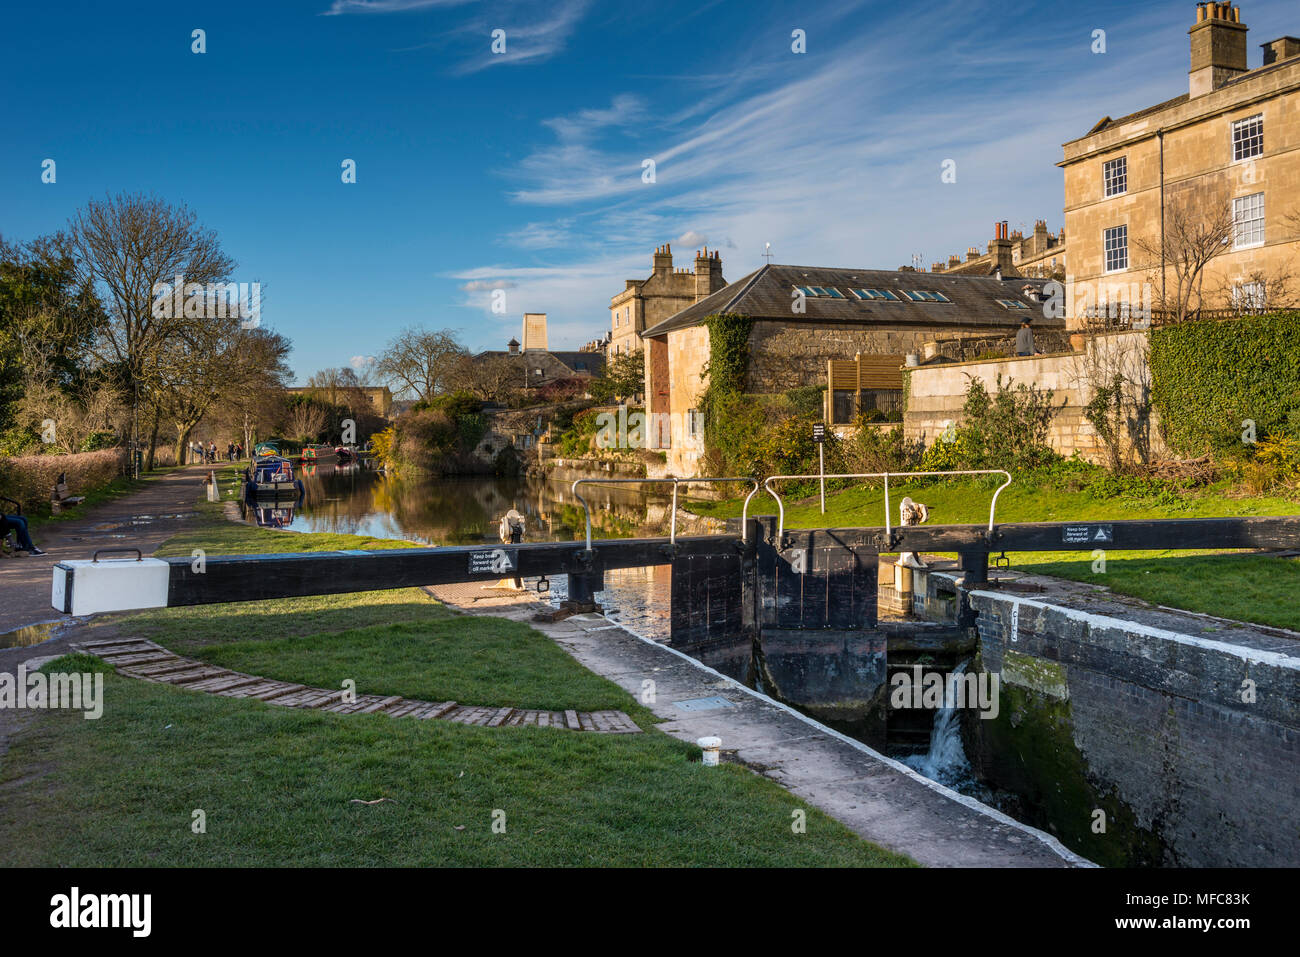 Case lungo Kennet and Avon Canal in bagno, Somerset, Regno Unito. Duecento anni fa il canale provvisto un vitale rotta commerciale tra Bristol e Londra. Foto Stock